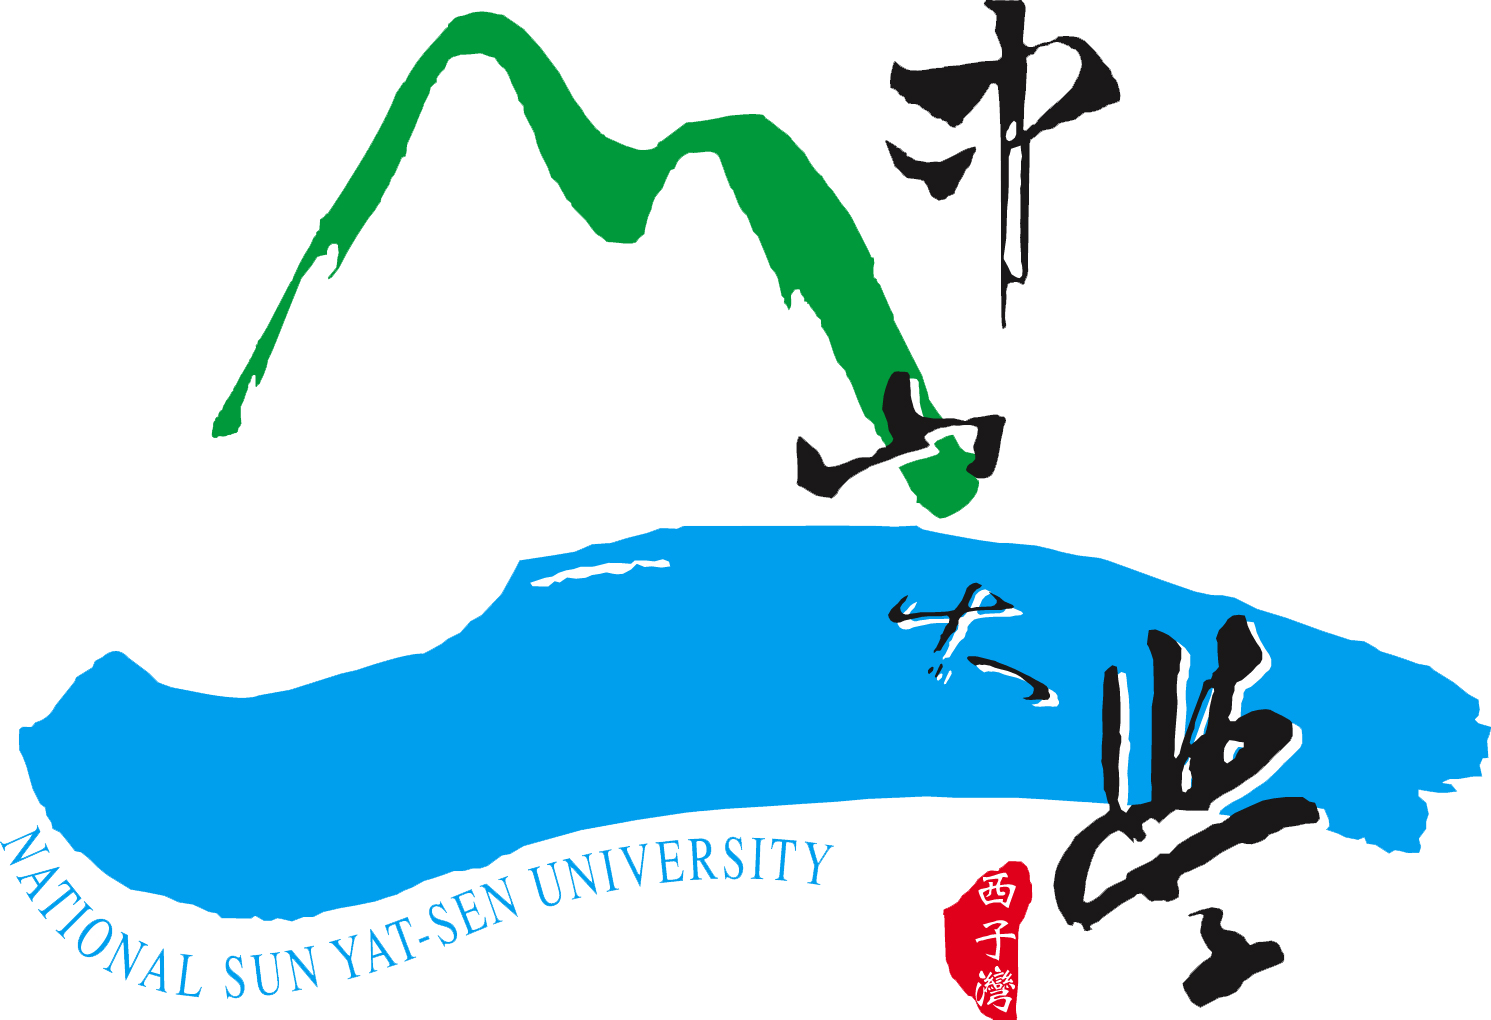 NSYSU Logo